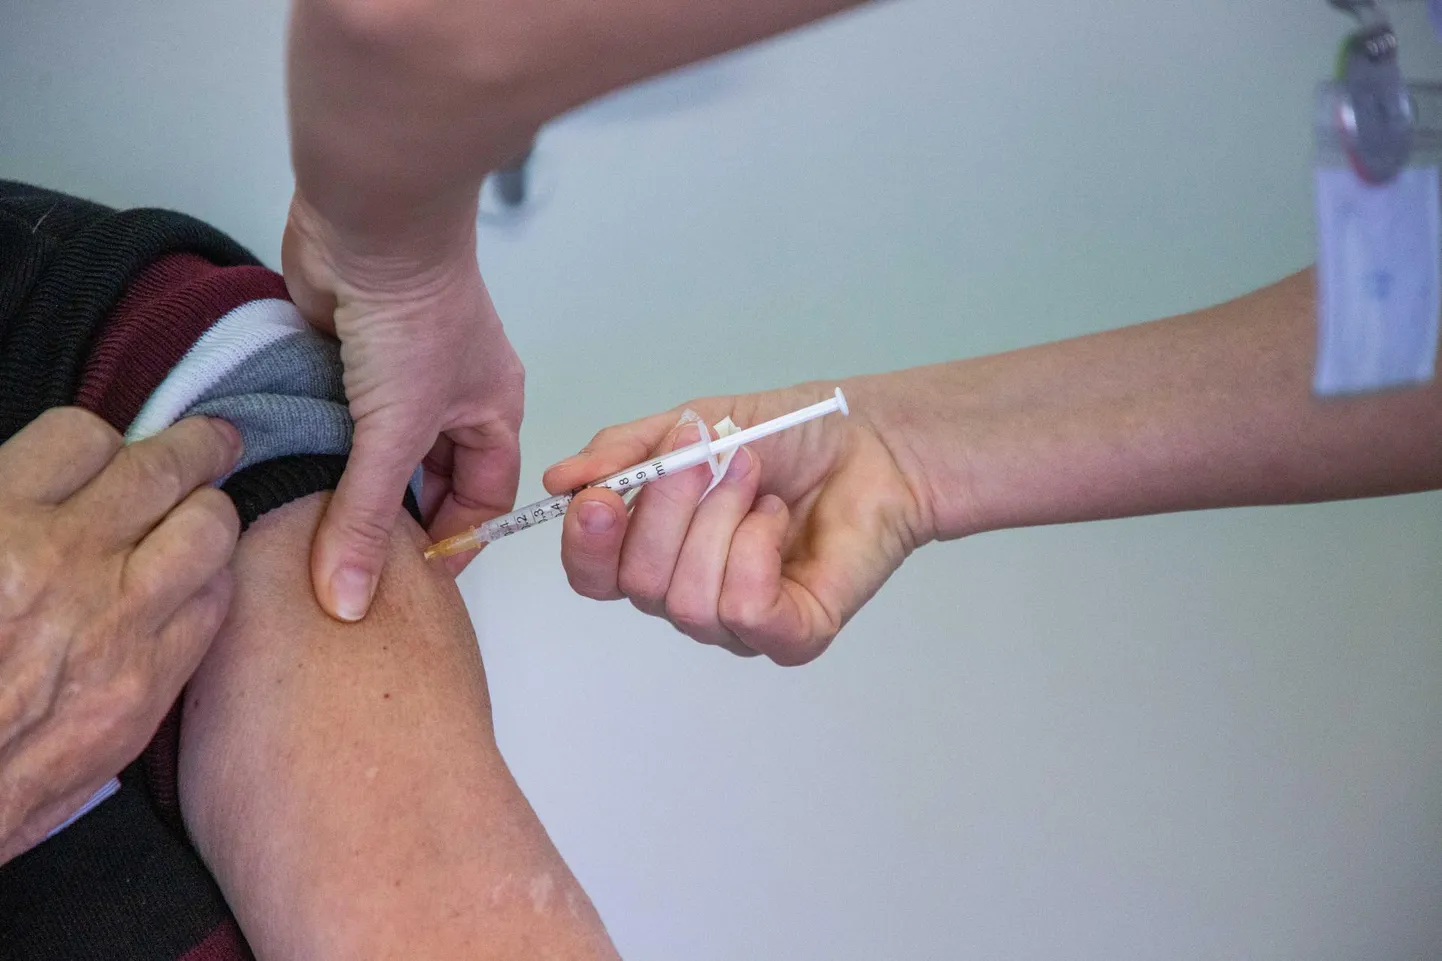 Üle 70-aastaste hõlmatus vähemalt ühe vaktsiinidoosiga on 51 protsenti. 70+ vanusegruppi on üle 60 protsenti vaktsineeritud Hiiu-, Lääne-, Tartu-, Järva-, Rapla- ja Saaremaal.